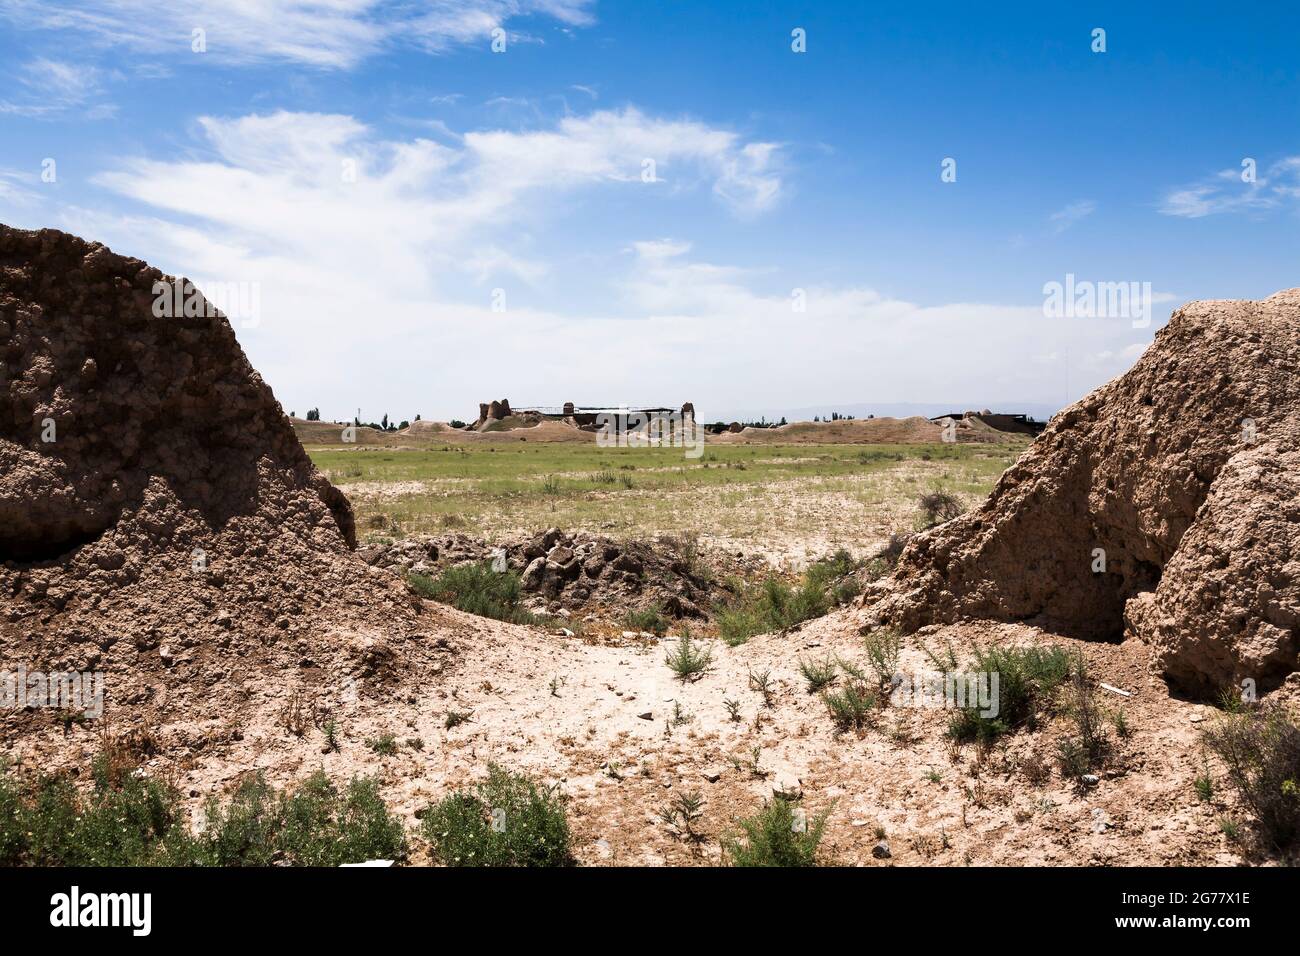 Resti della Cittadella di Tus (Castello di Kohandezh Tous), Tus (Tous), sobborgo di Mashhad, Provincia di Razavi Khorasan, Iran, Persia, Asia occidentale, Asia Foto Stock